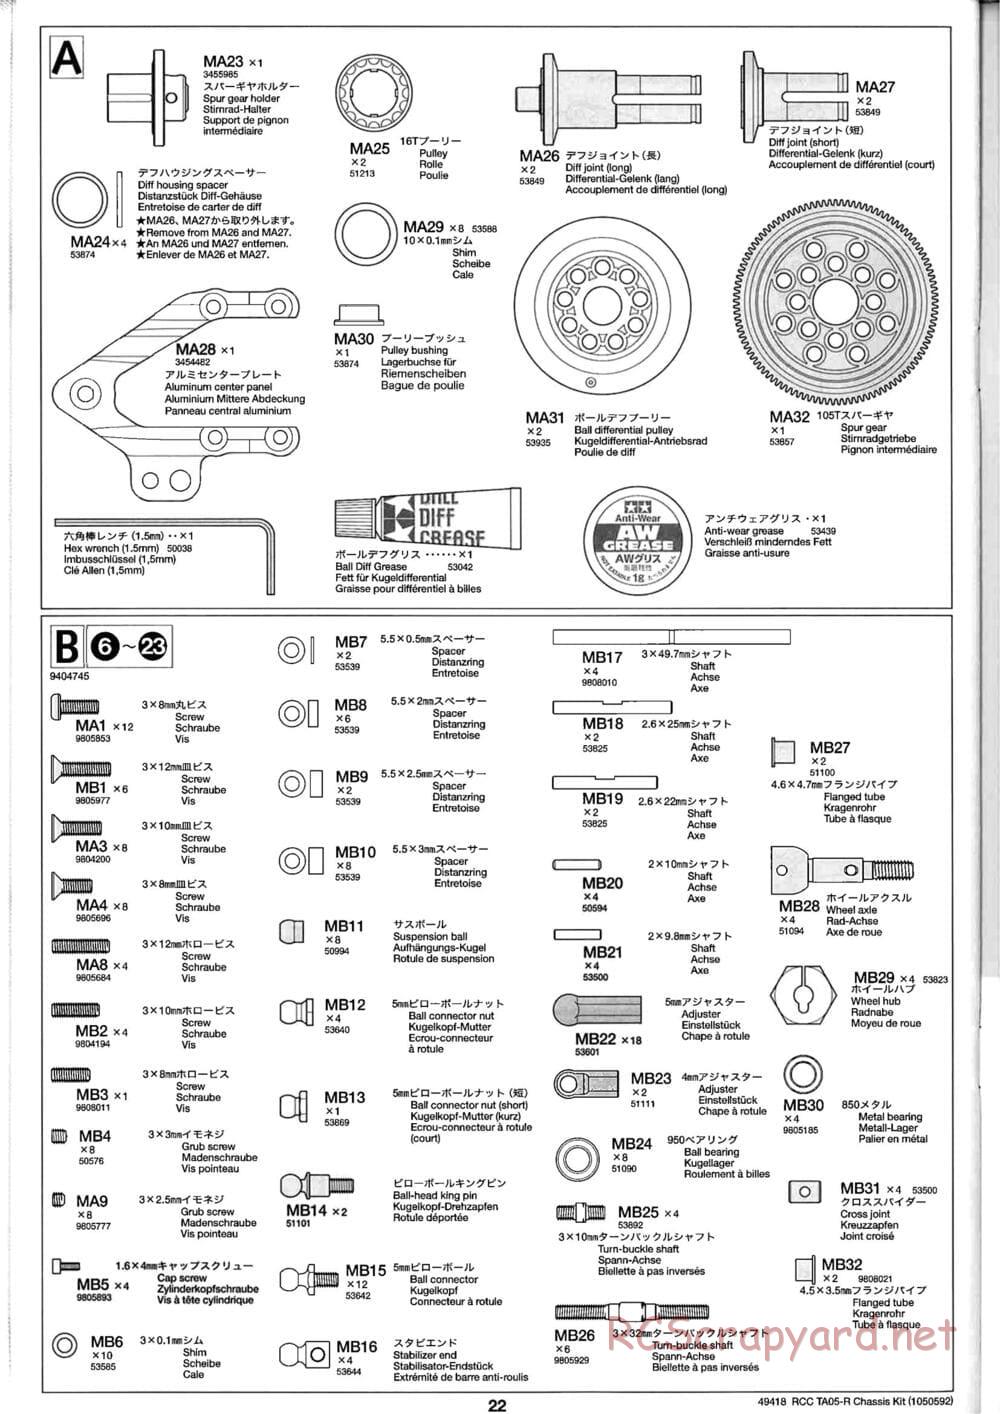 Tamiya - TA05-R Chassis - Manual - Page 22